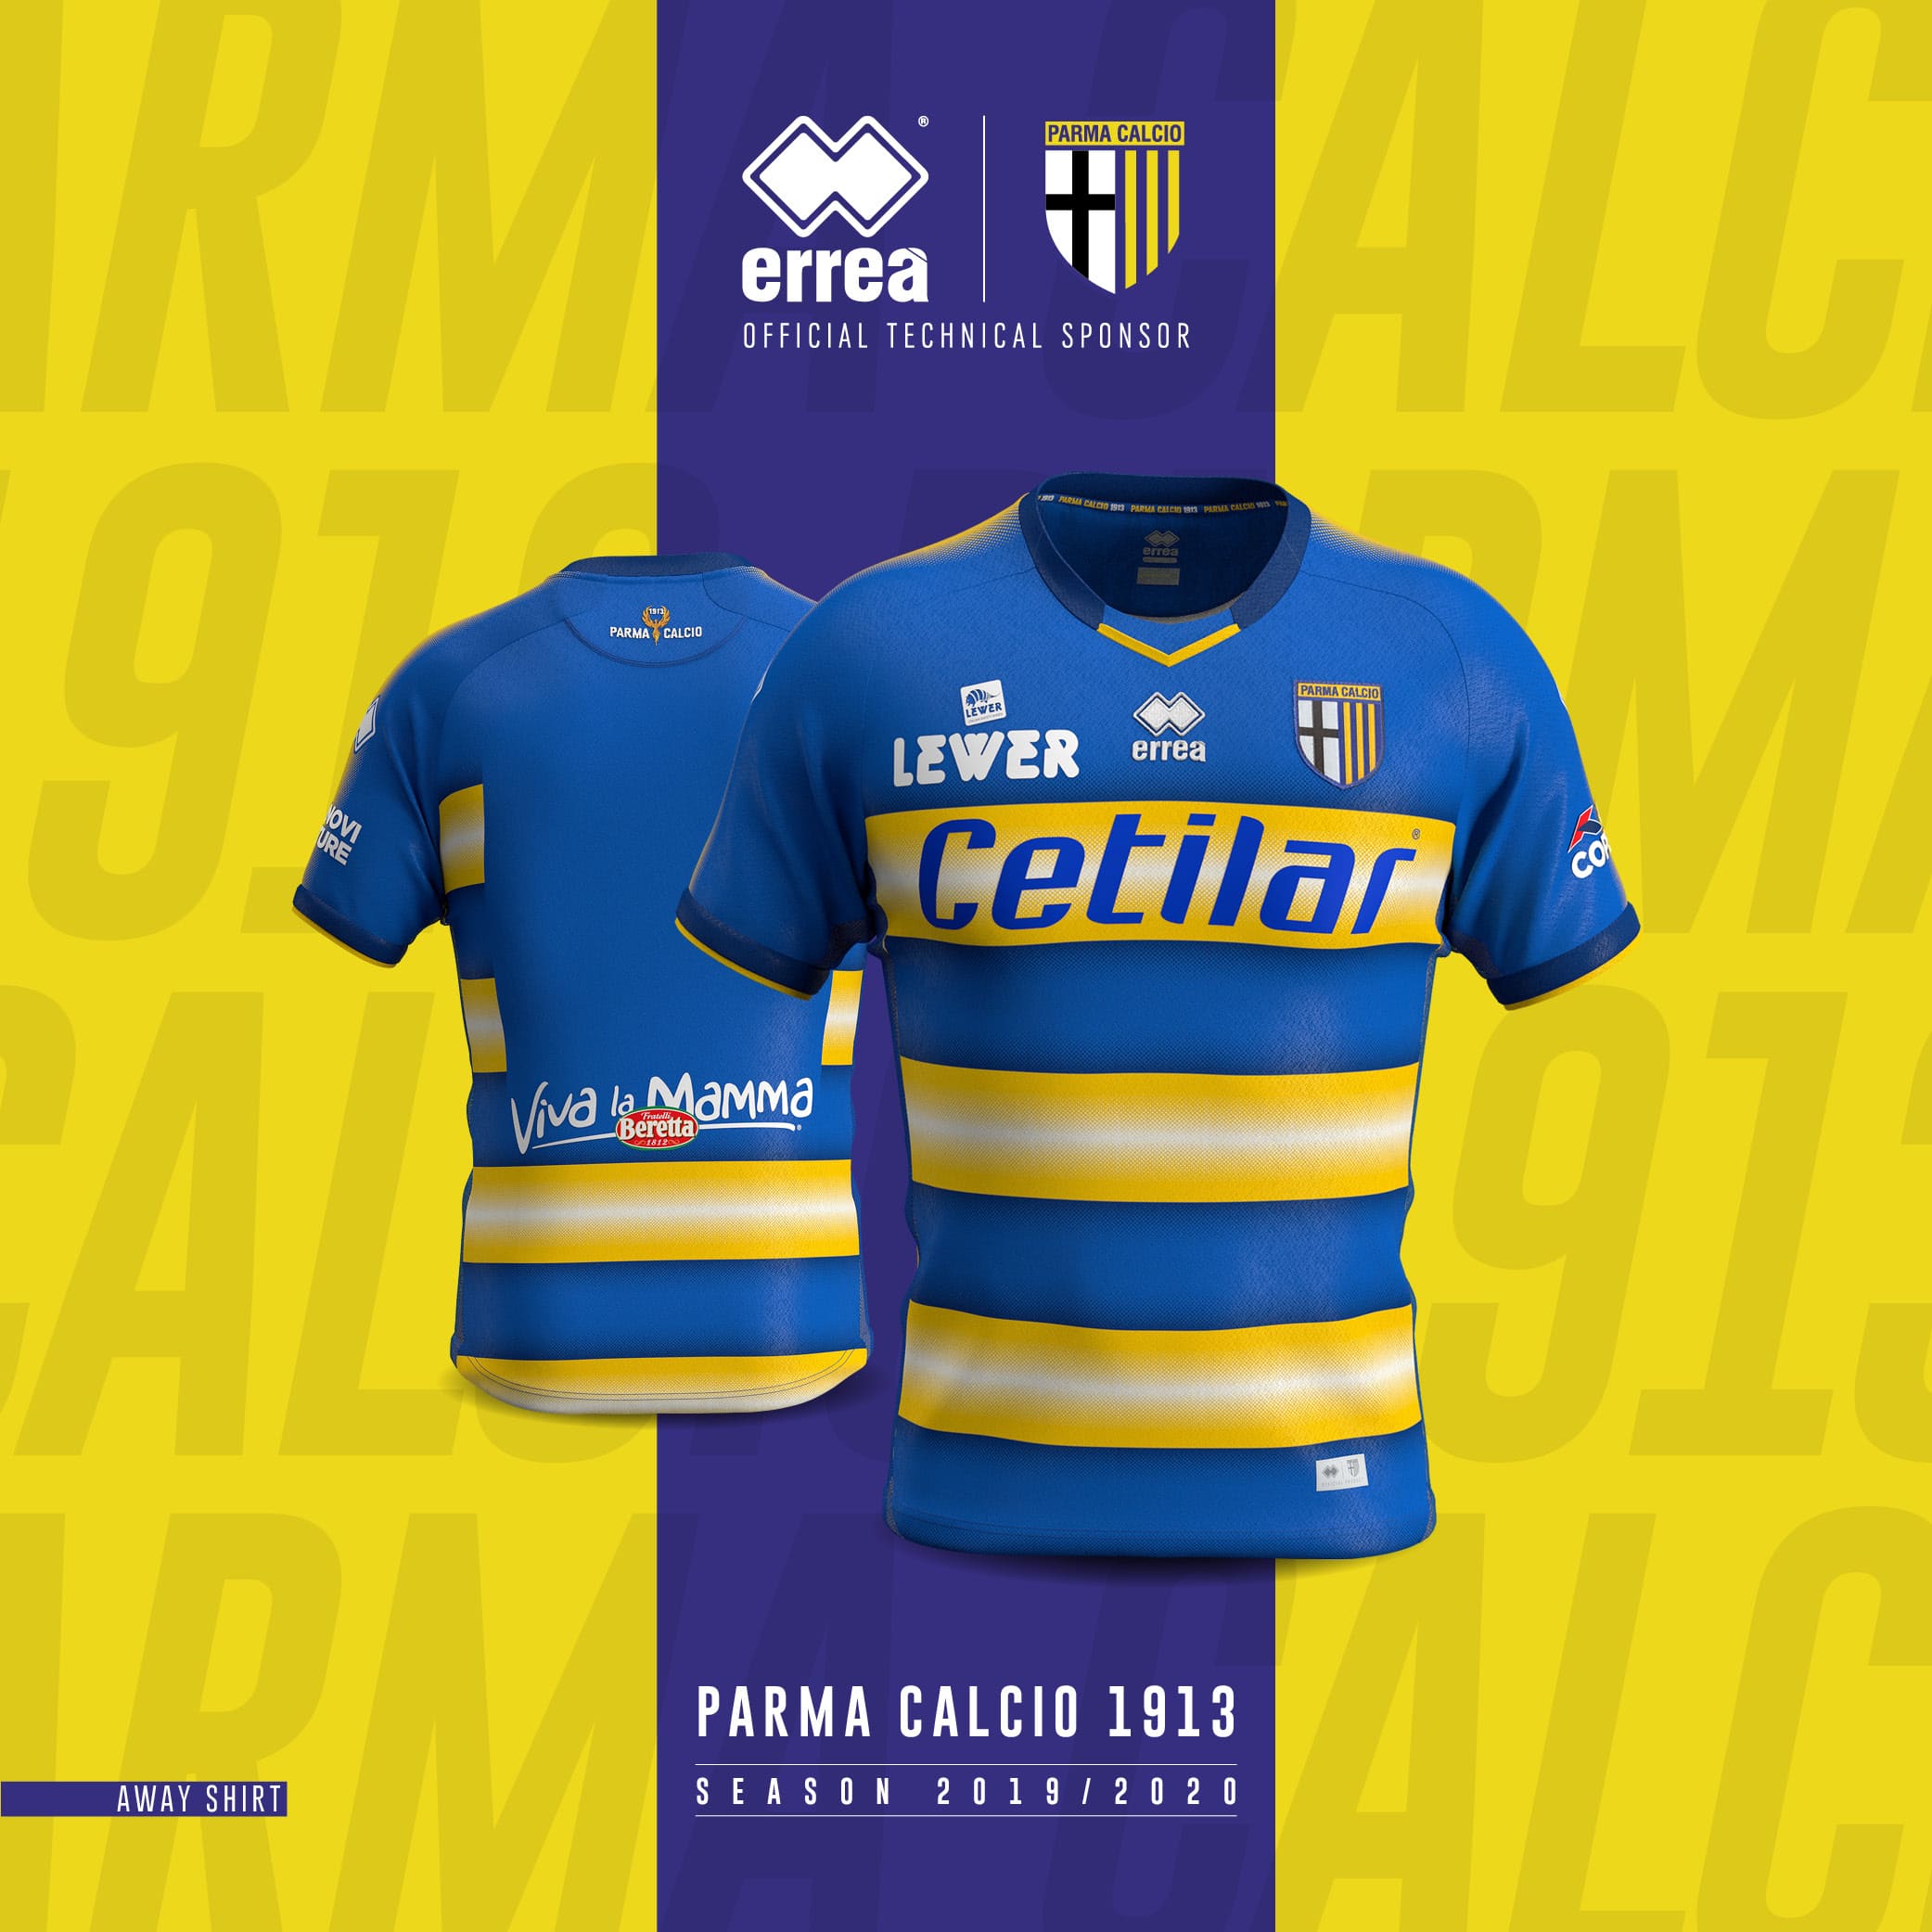 Afhankelijk vragenlijst geluk The 2019/20 away shirt for Parma Calcio 1913 is unveiled!